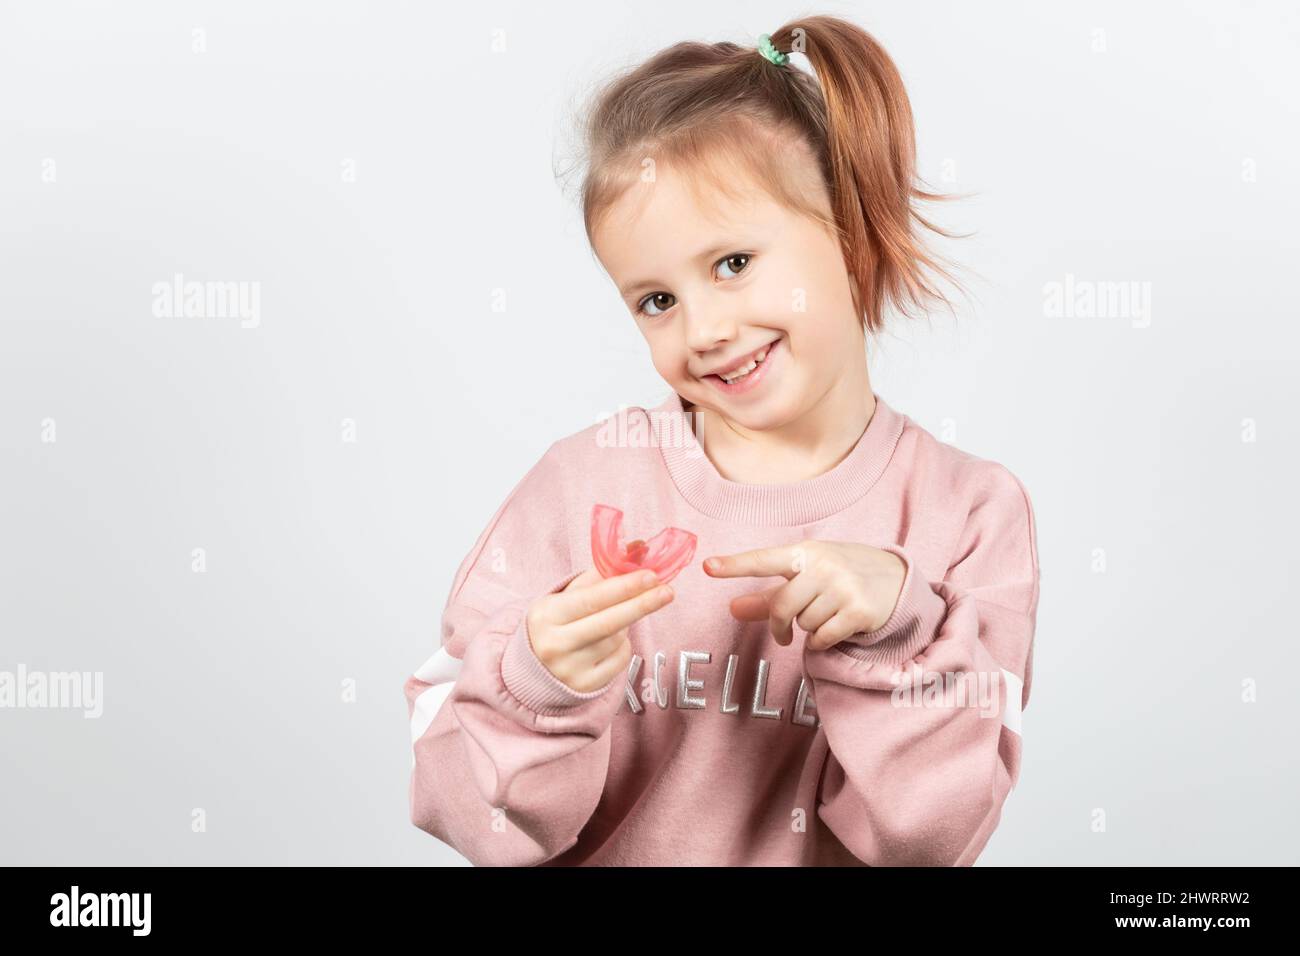 Carino ragazza caucasica piccola con i capelli biondi sta tenendo un addestratore dentario di miofunctional rosa sul bianco lo sfondo. Tariner dentale è fatto per aiutare equala Foto Stock